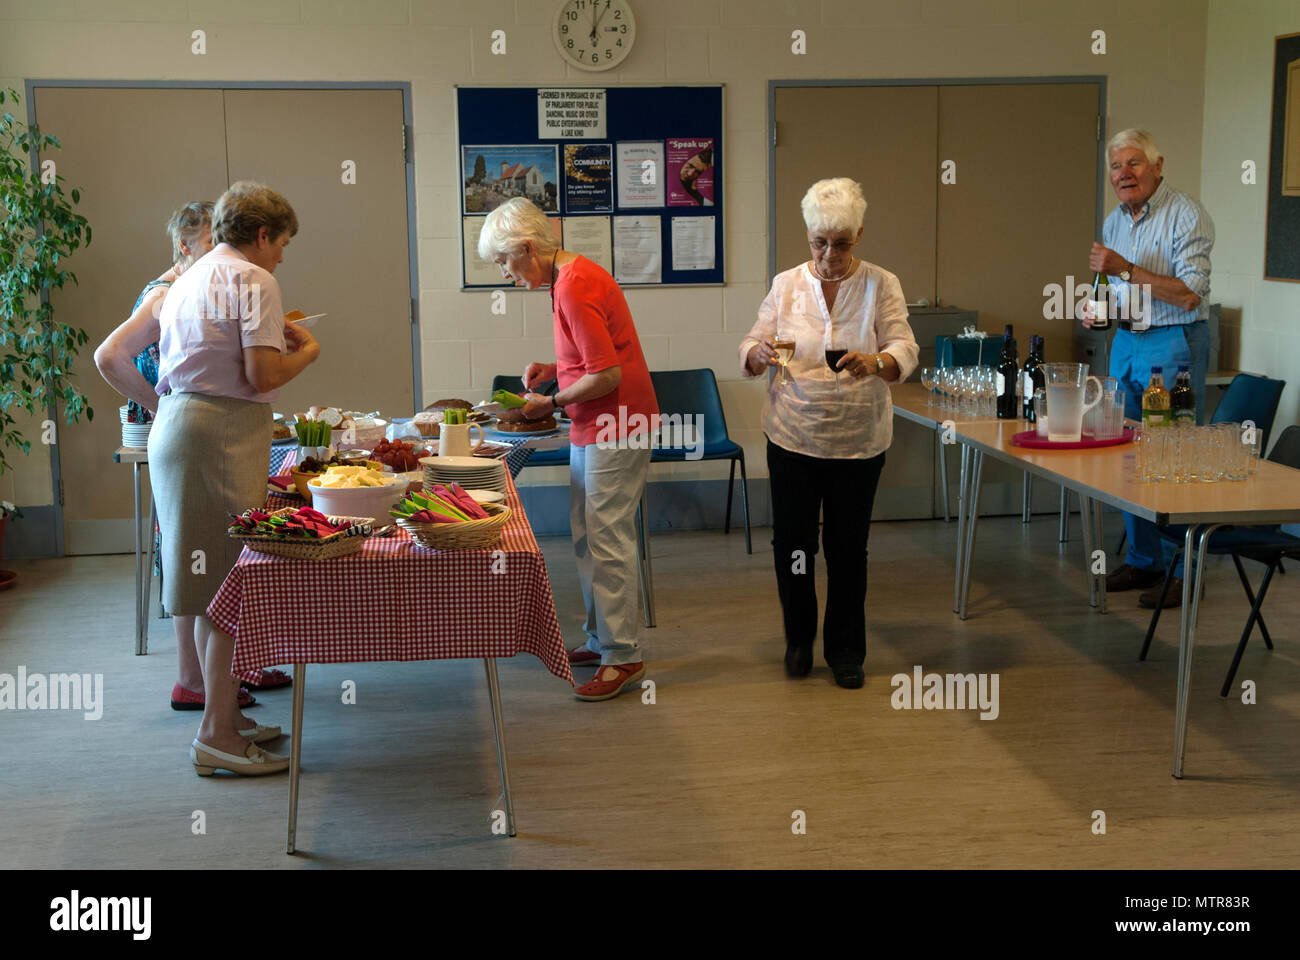 Village Hall Norfolk, Royaume-Uni Église d'Angleterre repas communautaire préparé par des femmes locales, pendant que l'homme s'occupe de la boisson. Angleterre des années 2018 2010. HOMER SYKES Banque D'Images